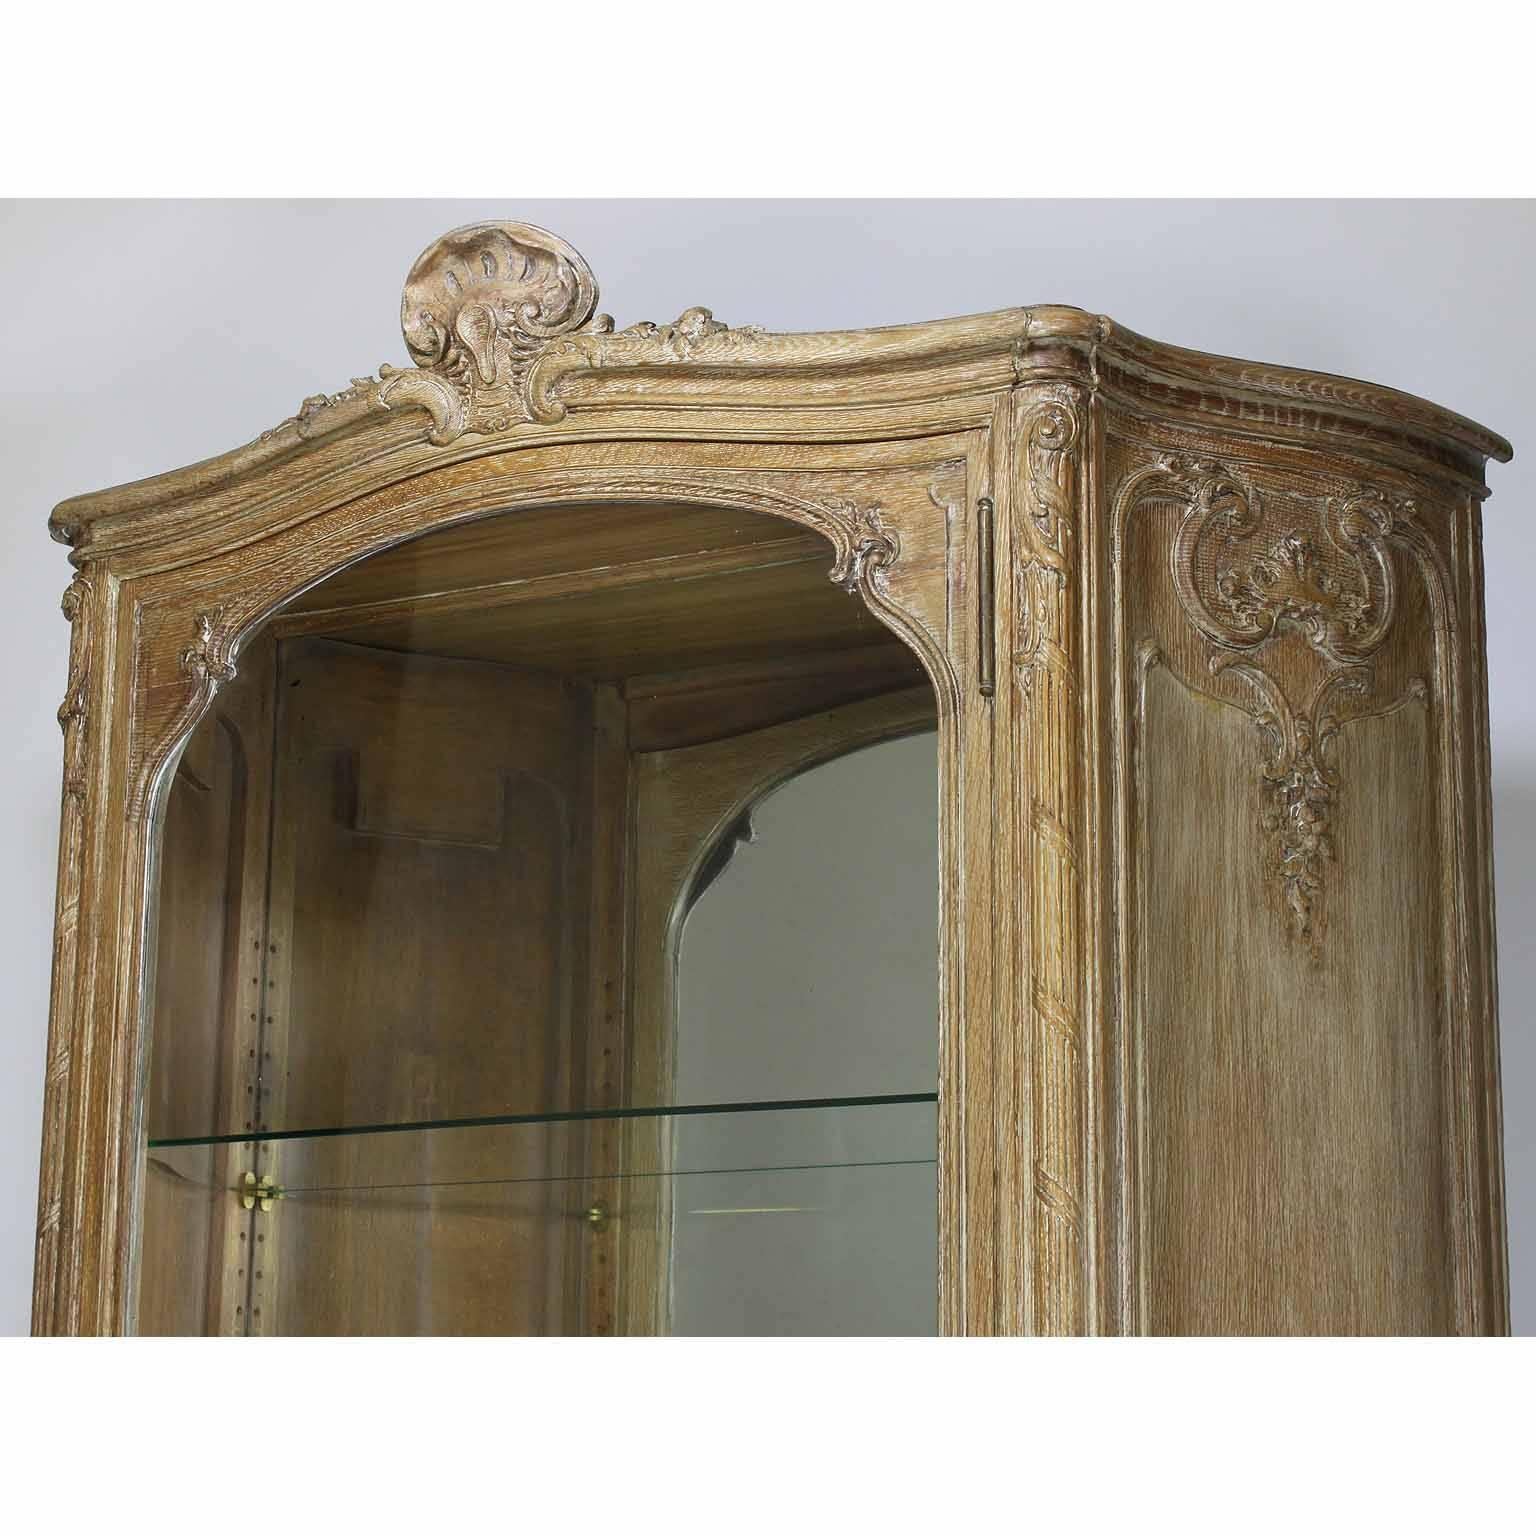 Une belle crédence vitrine en noyer bombé sculpté et blanchi de style Louis XV du 19ème siècle. La vitrine haute et élancée à une seule porte sculptée, avec une porte vitrée avant arquée et trois étagères en verre réglables, couronnée d'un